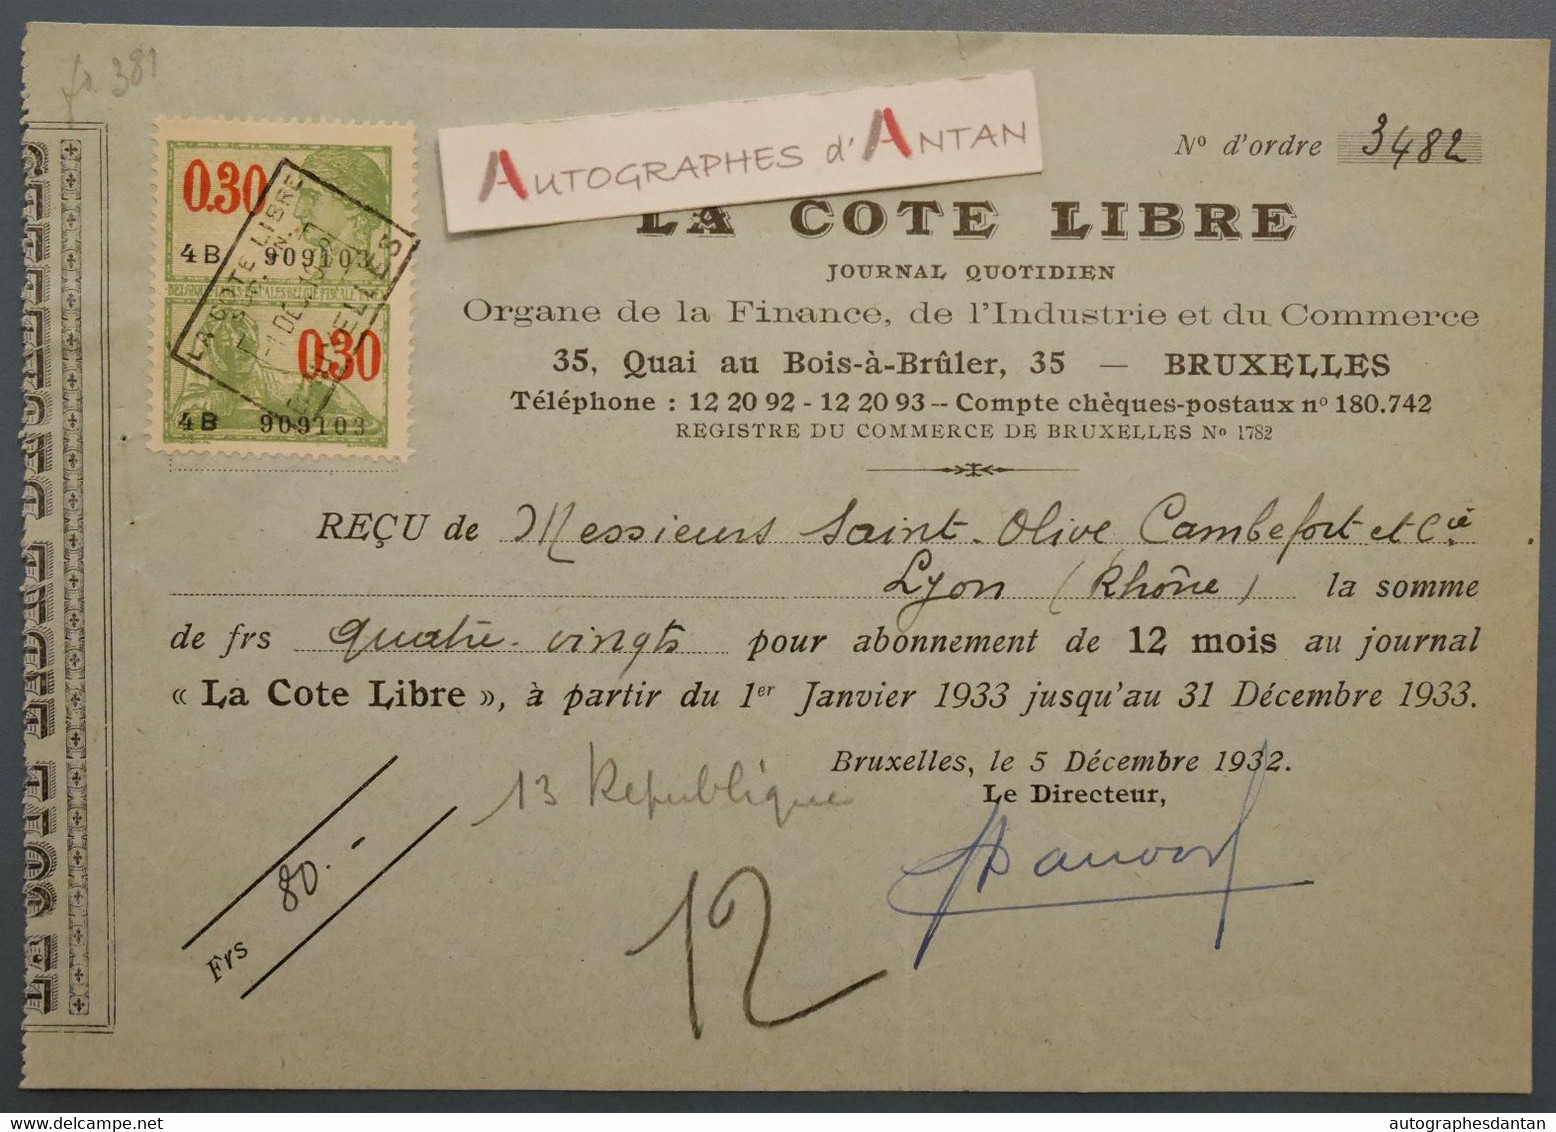 1932 Bruxelles La Cote Libre Journal Quotidien - Reçu Mrs Saint Olive Cambefort à Lyon - France Belgique - Timbre Fiscal - Bank En Verzekering